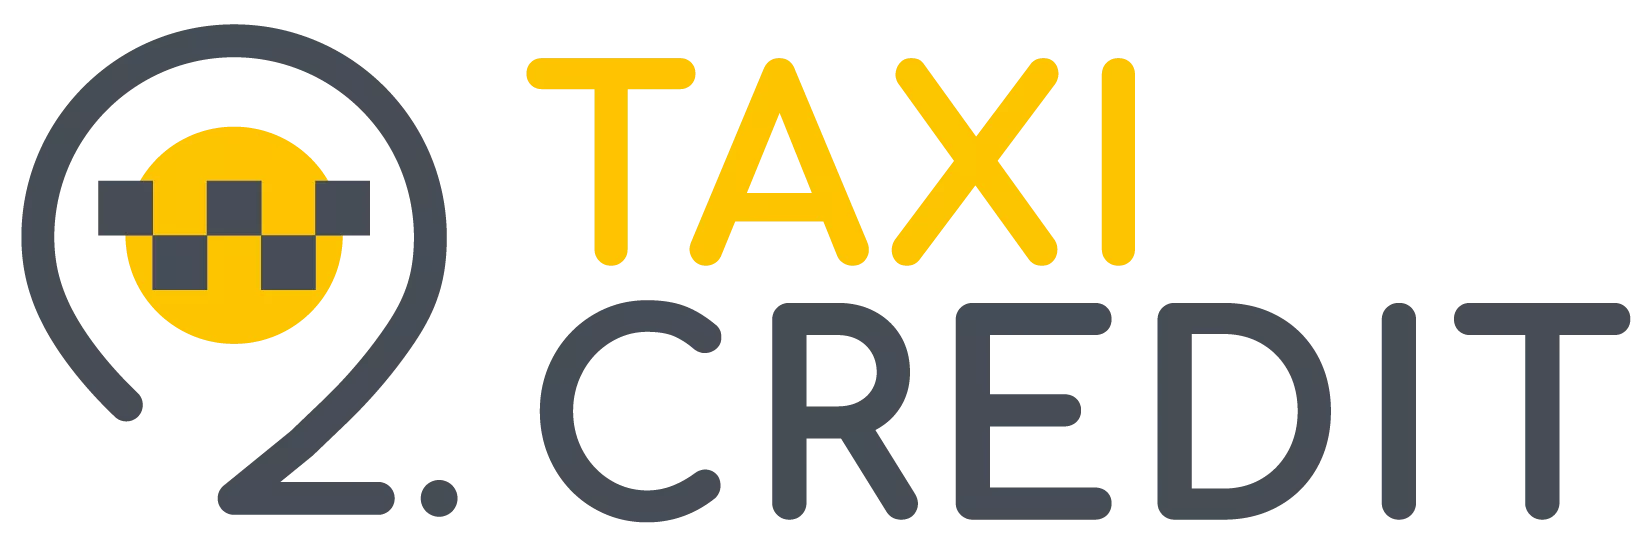 Логотип Такси в кредит